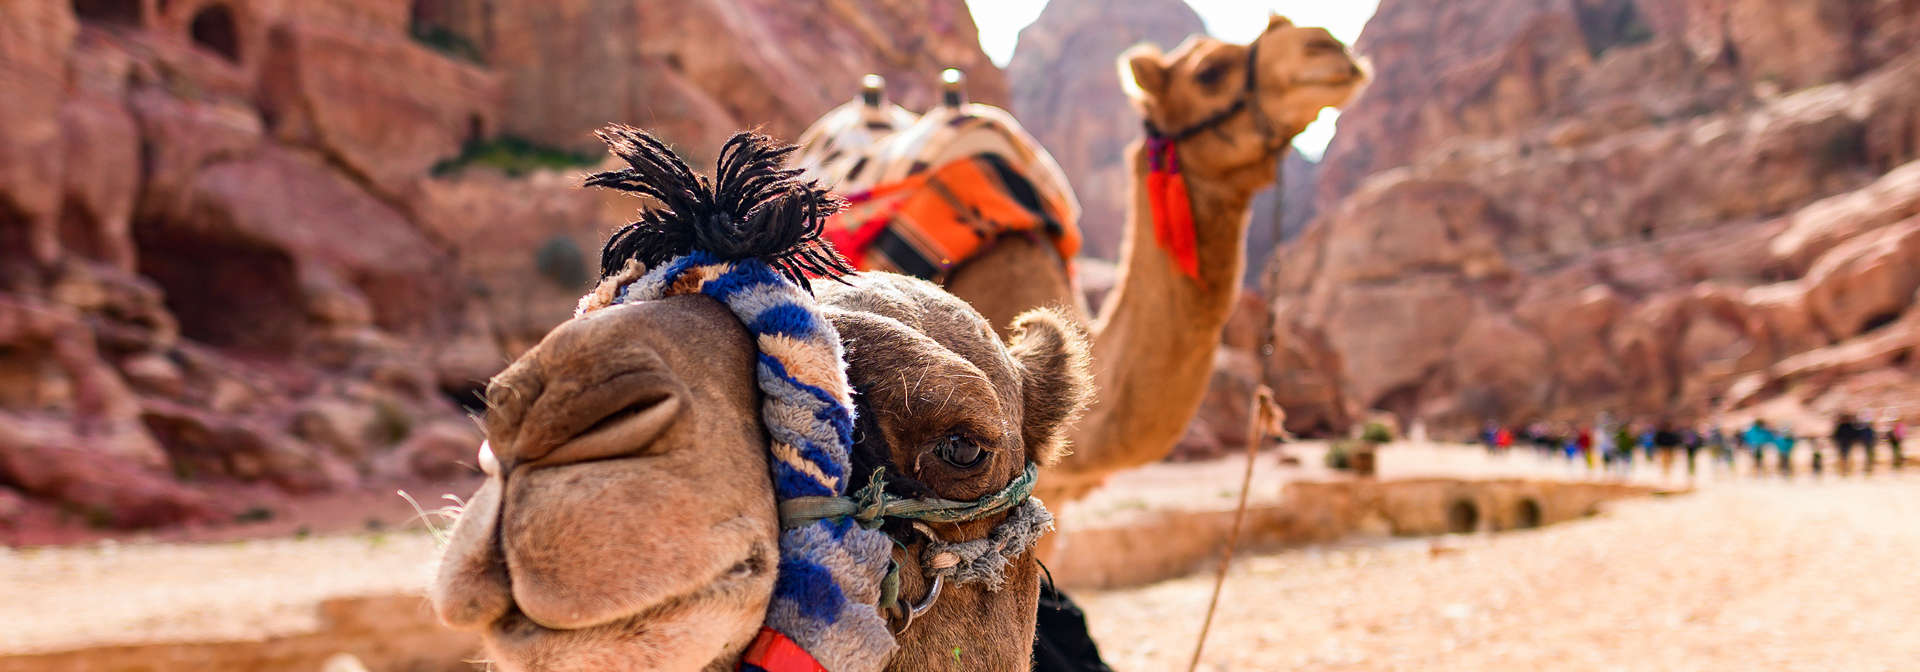 jordan - petra kamel